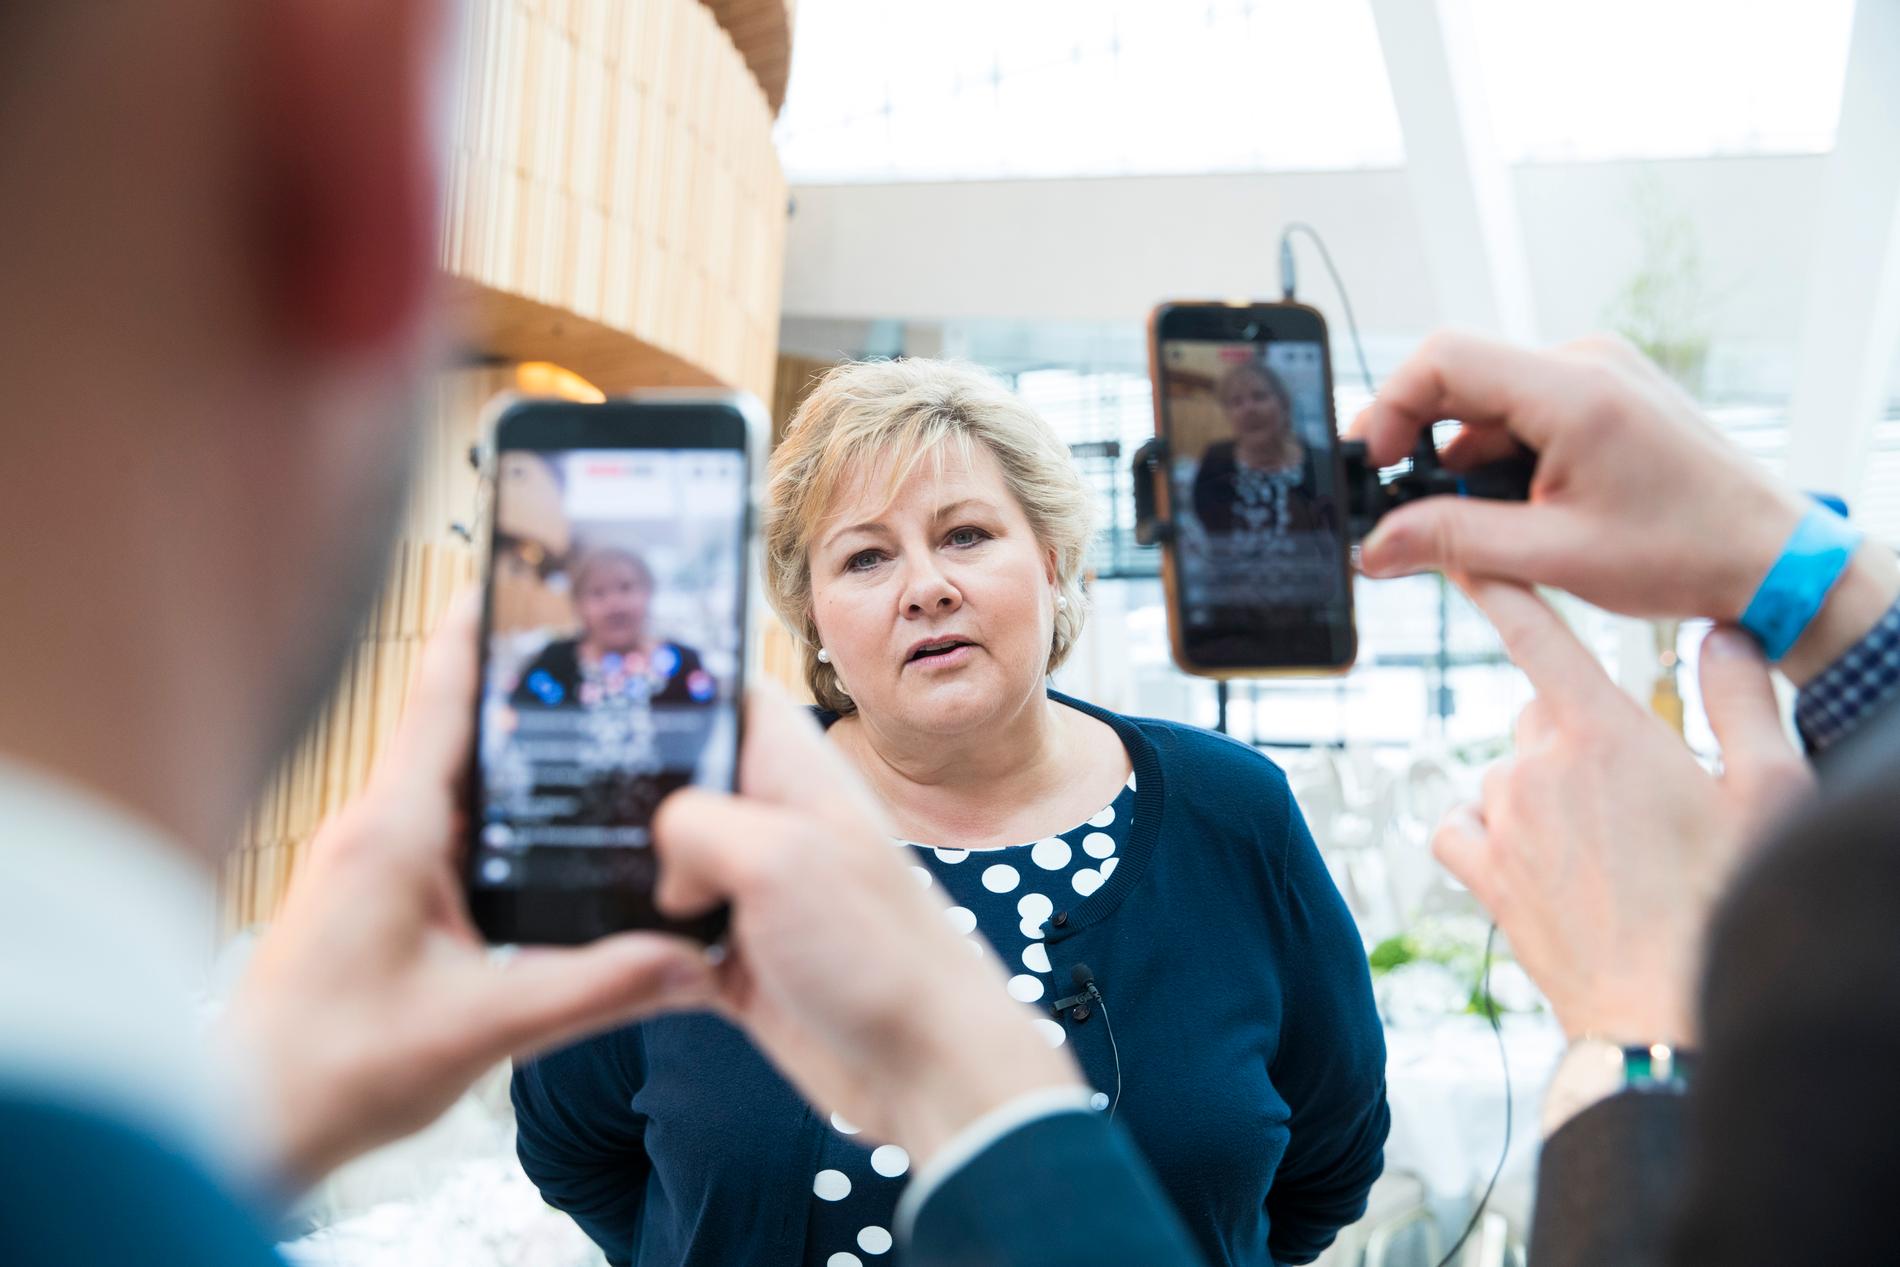  Statsminister Erna Solberg (H) snakker til sine følgere live på Facebook i mai tidligere i år. Sosiale medier er et viktig hjelpemiddel for politikerne, særlig under valgkampen.